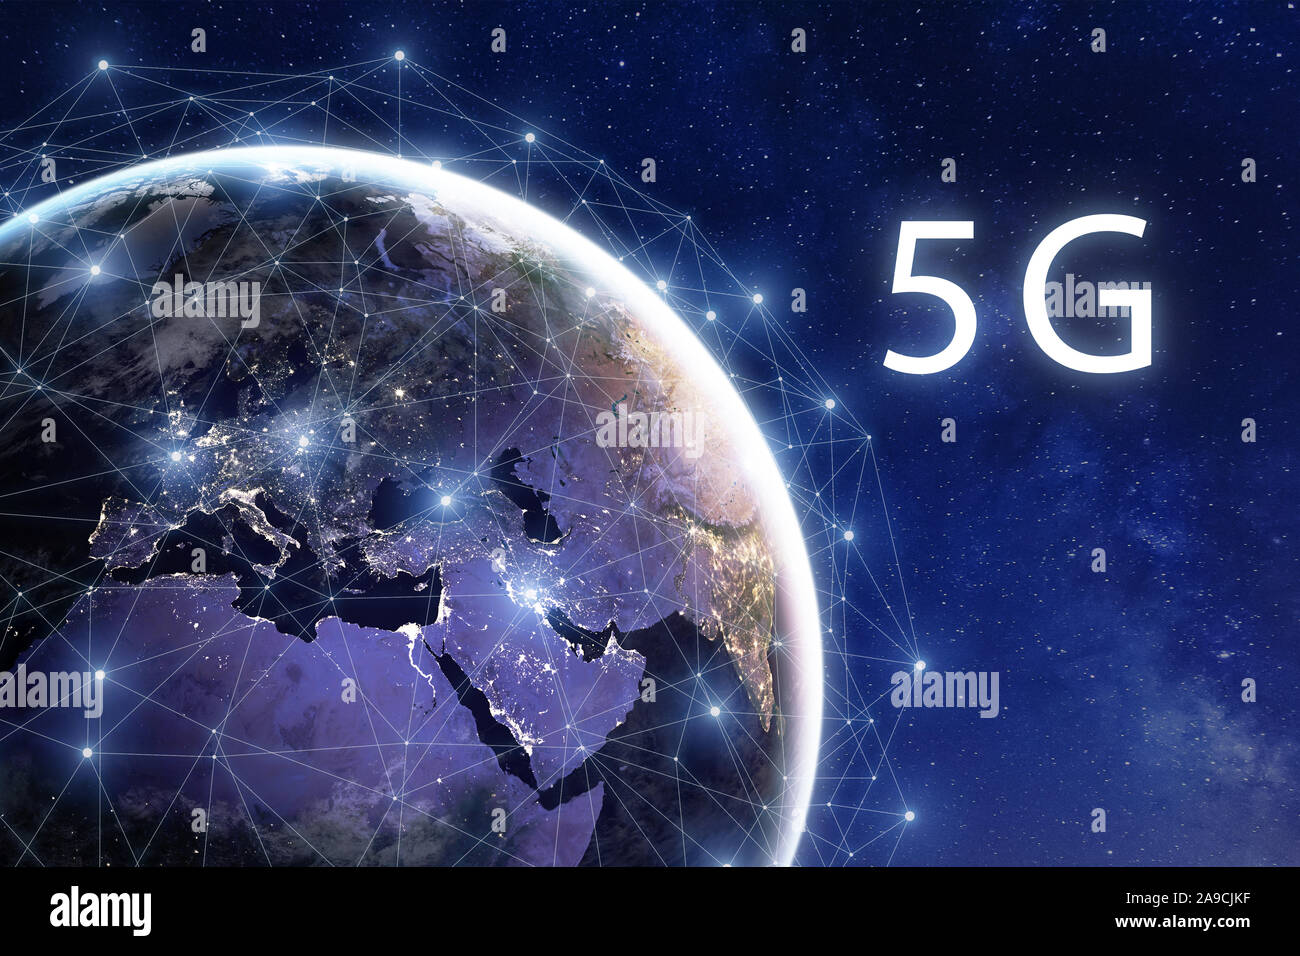 5G Wireless Mobile Internet Telecommunication Network Deployment in der Welt, mit hoher Geschwindigkeit Daten kommunikation Technologie, globale Verbindung um Plan Stockfoto